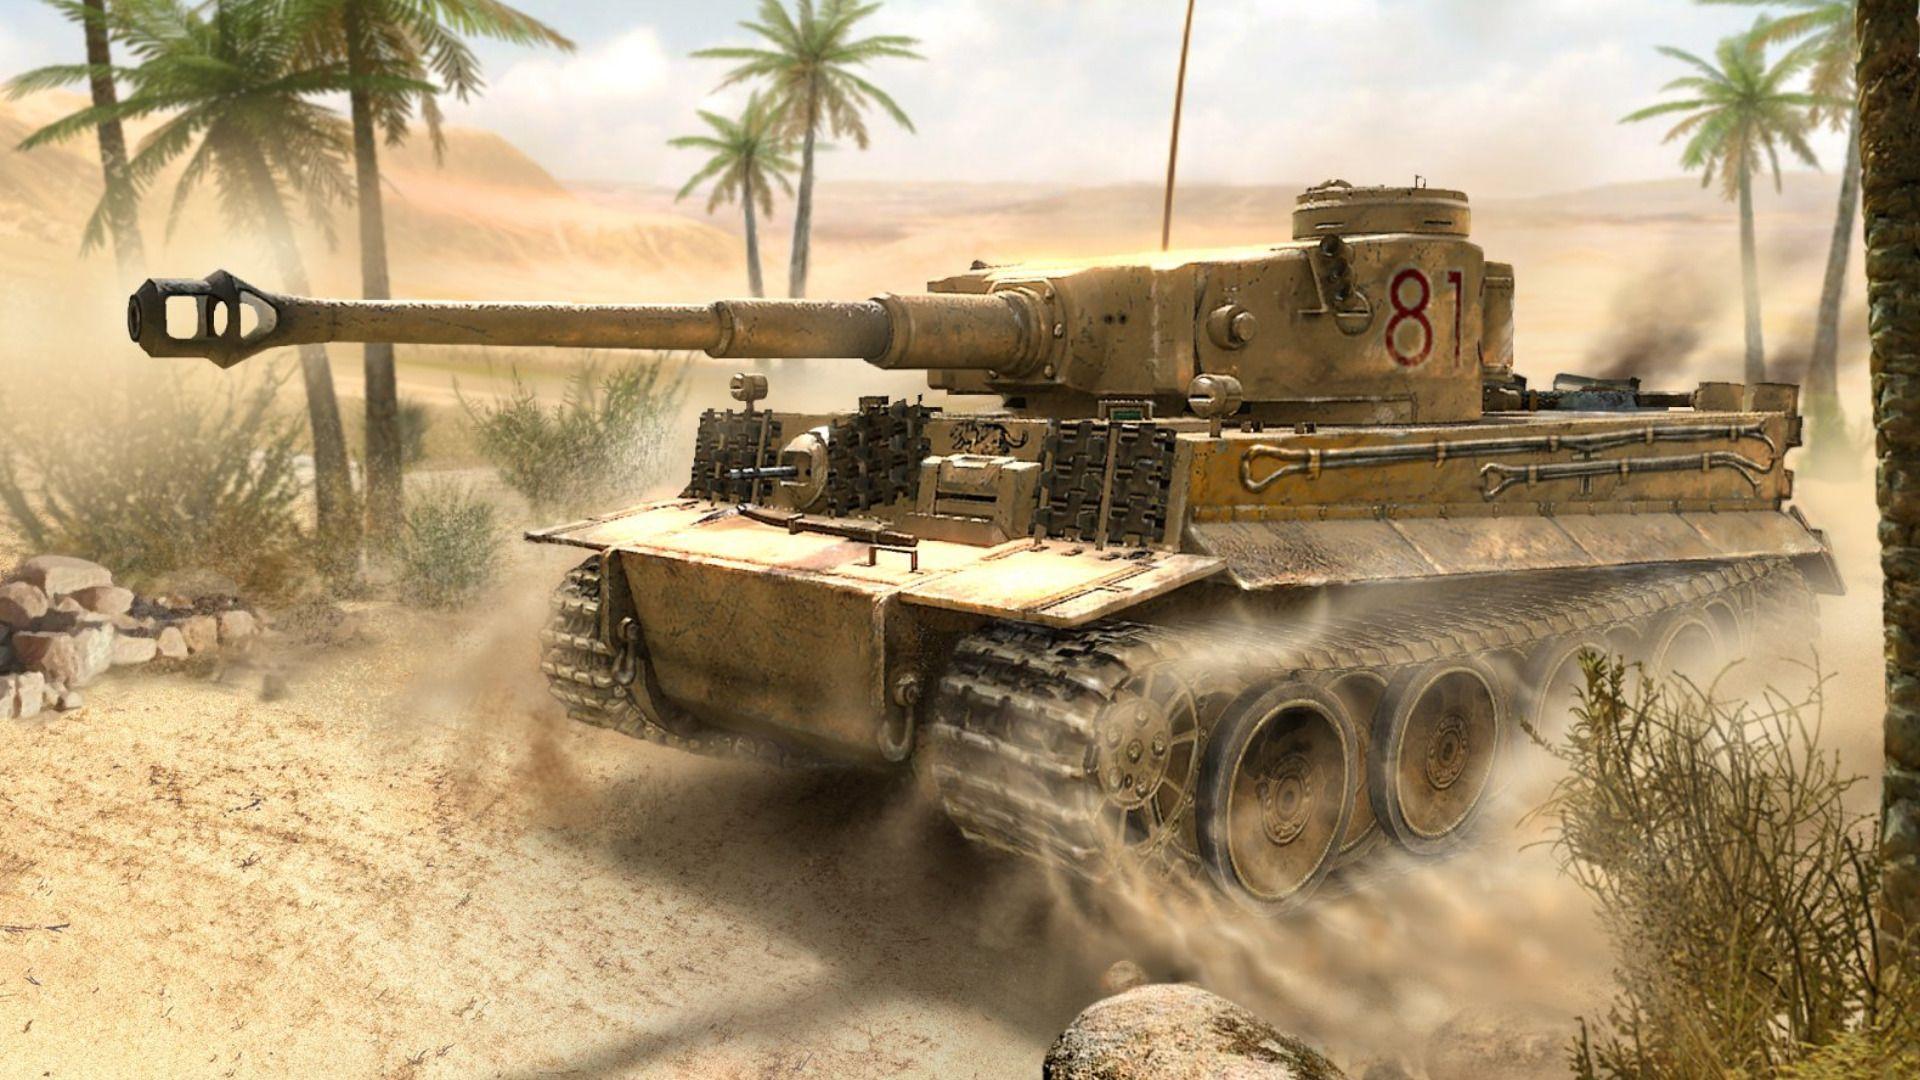 Tiger Tank Wallpaper Hd Widescreen - Theatre Of War 2 Africa - HD Wallpaper 